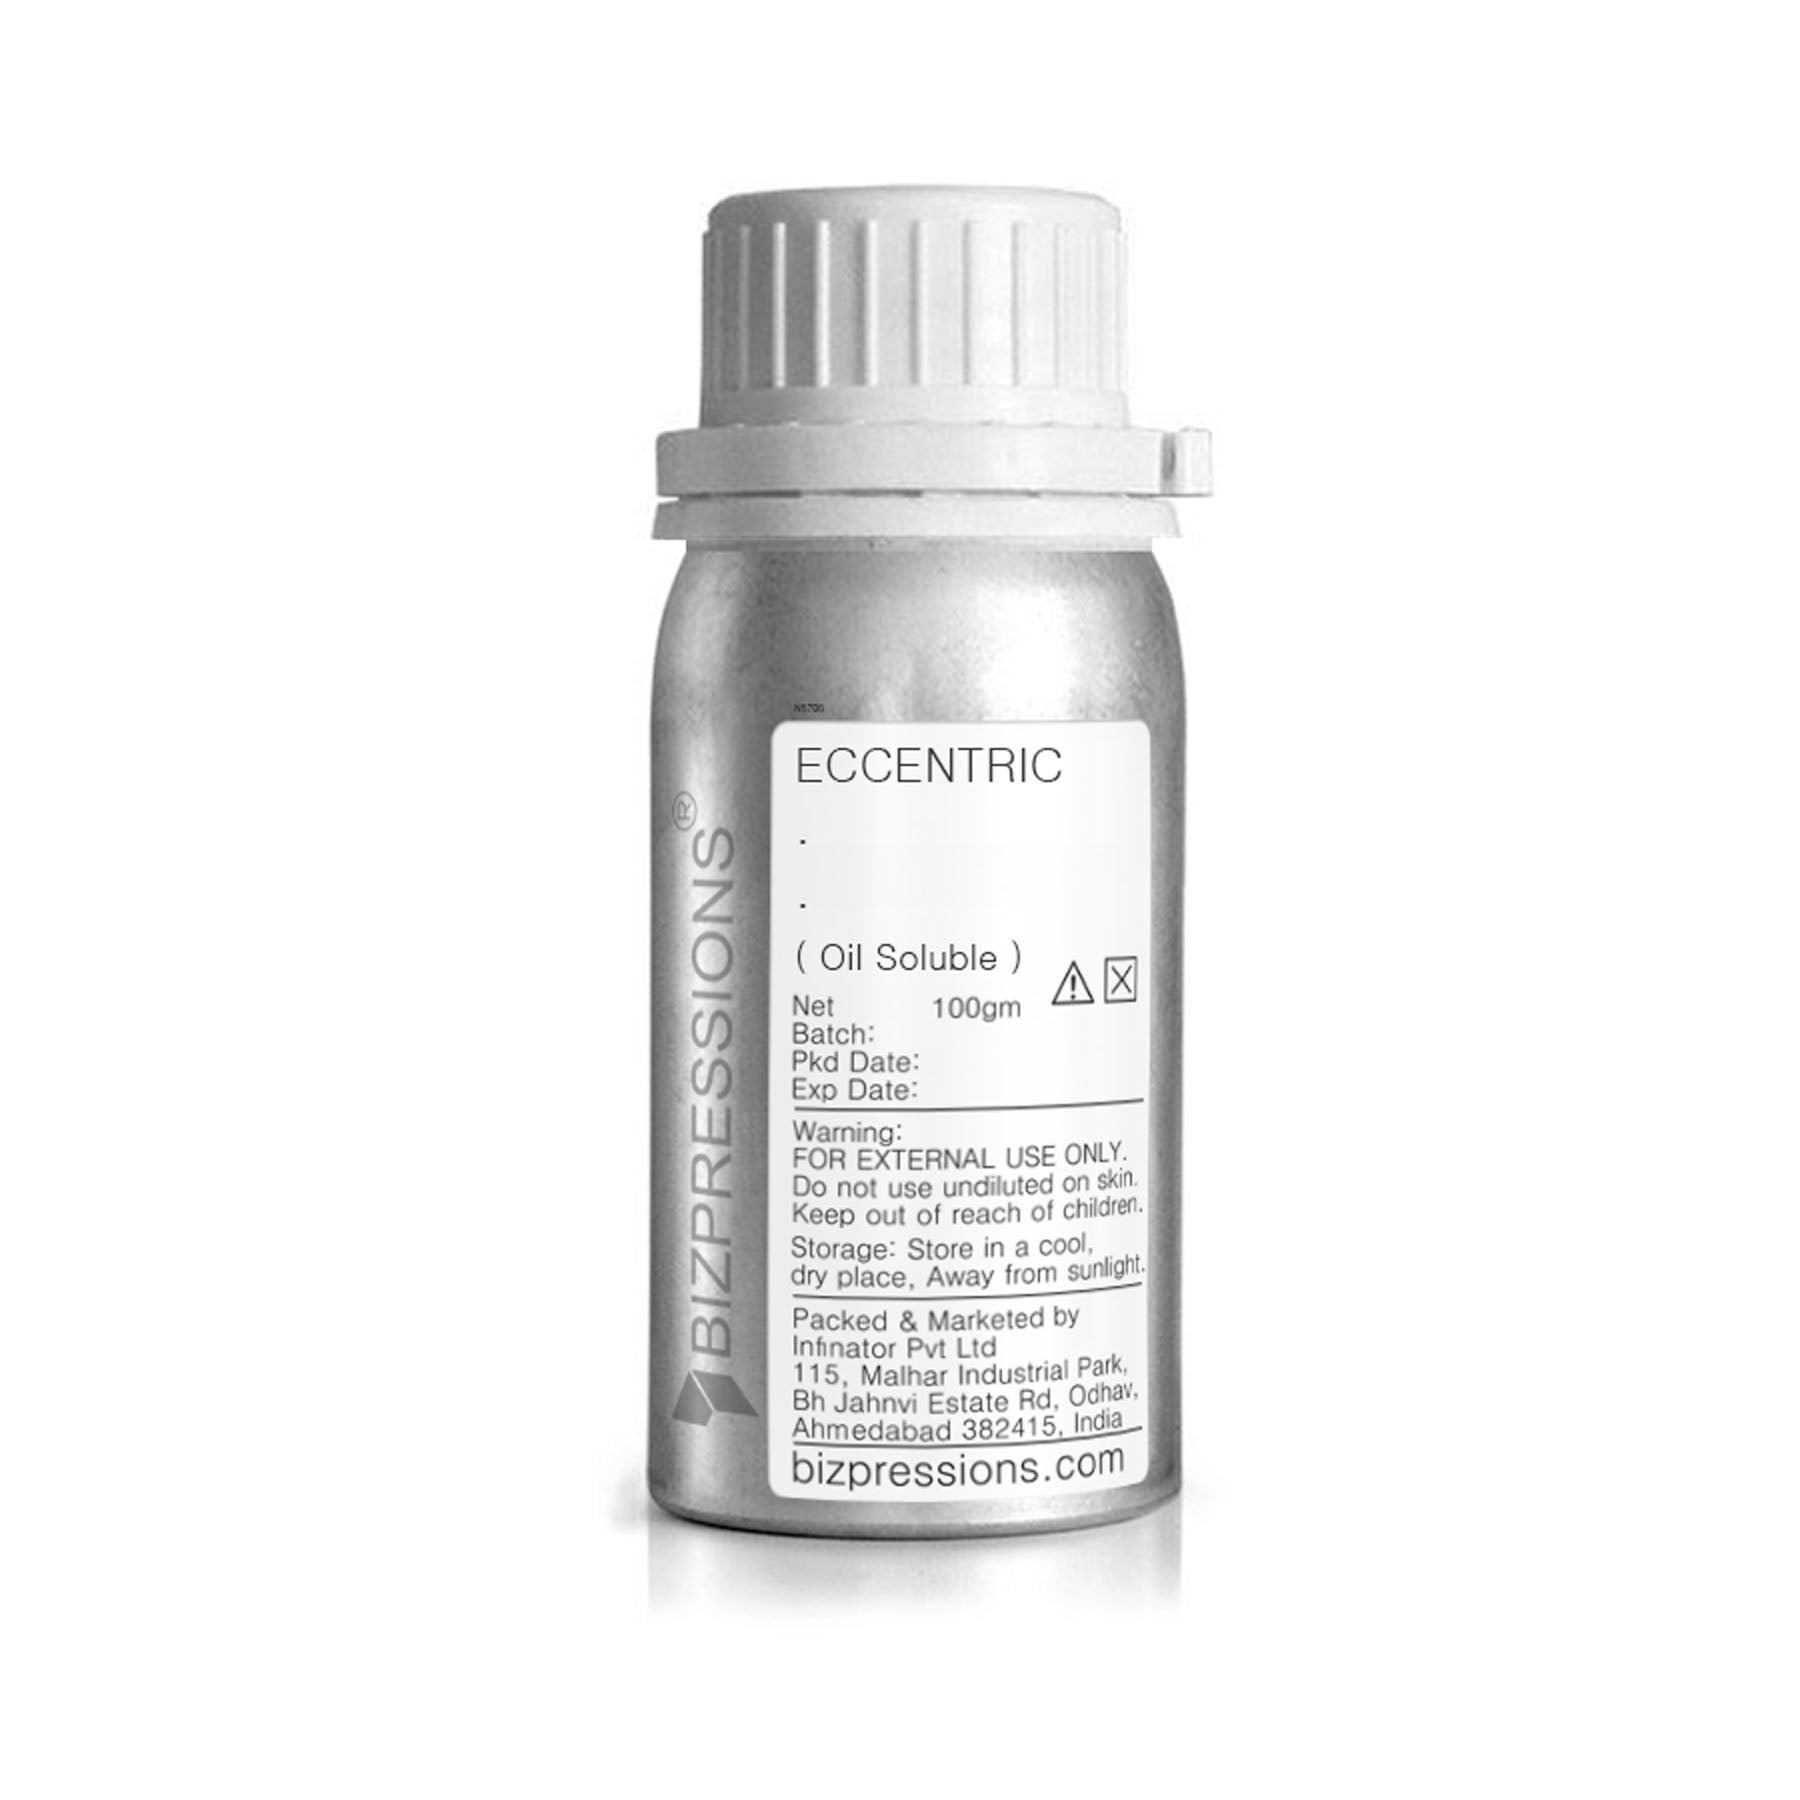 ECCENTRIC - Fragrance ( Oil Soluble ) - 100 gm